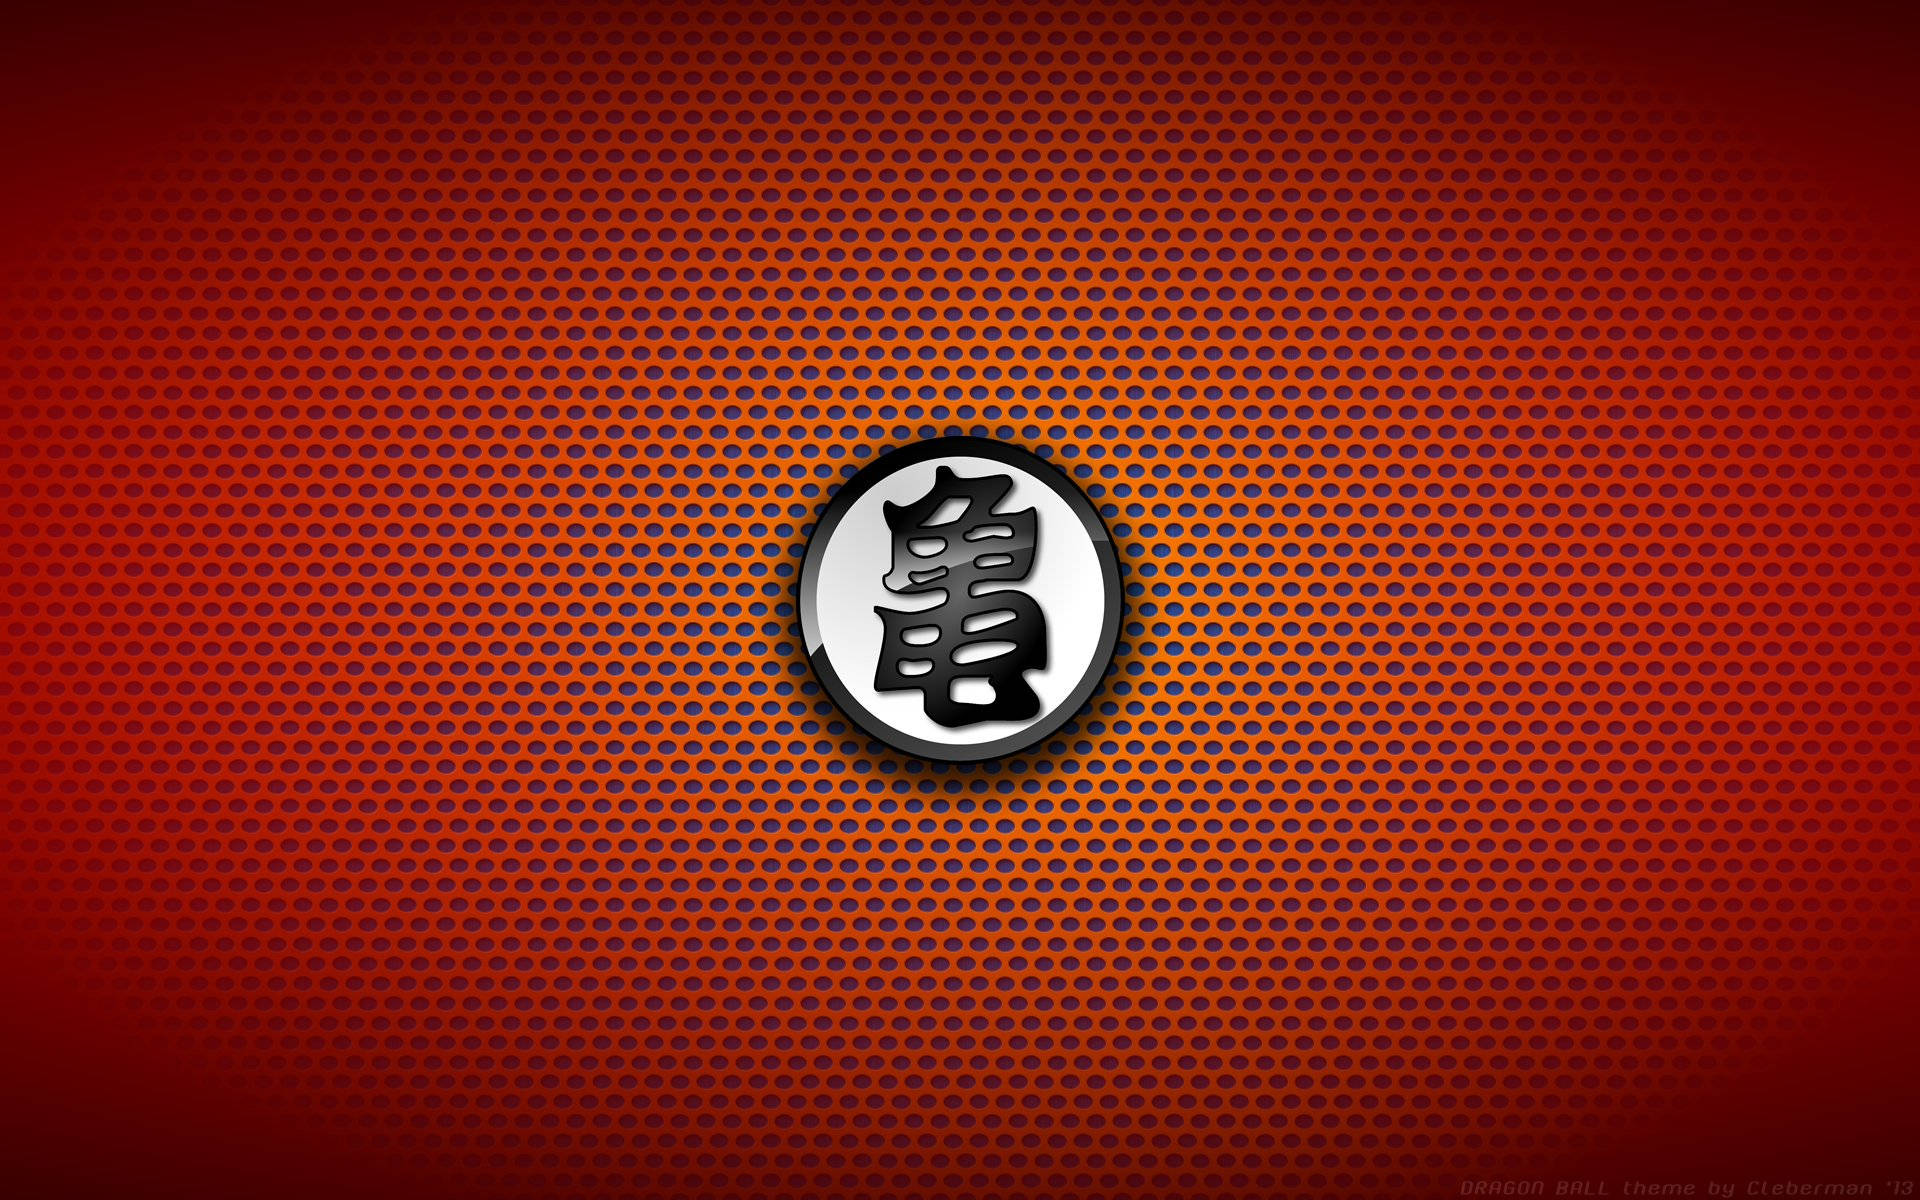 Detikoniska Dragon Ball Z-logotypen. Wallpaper